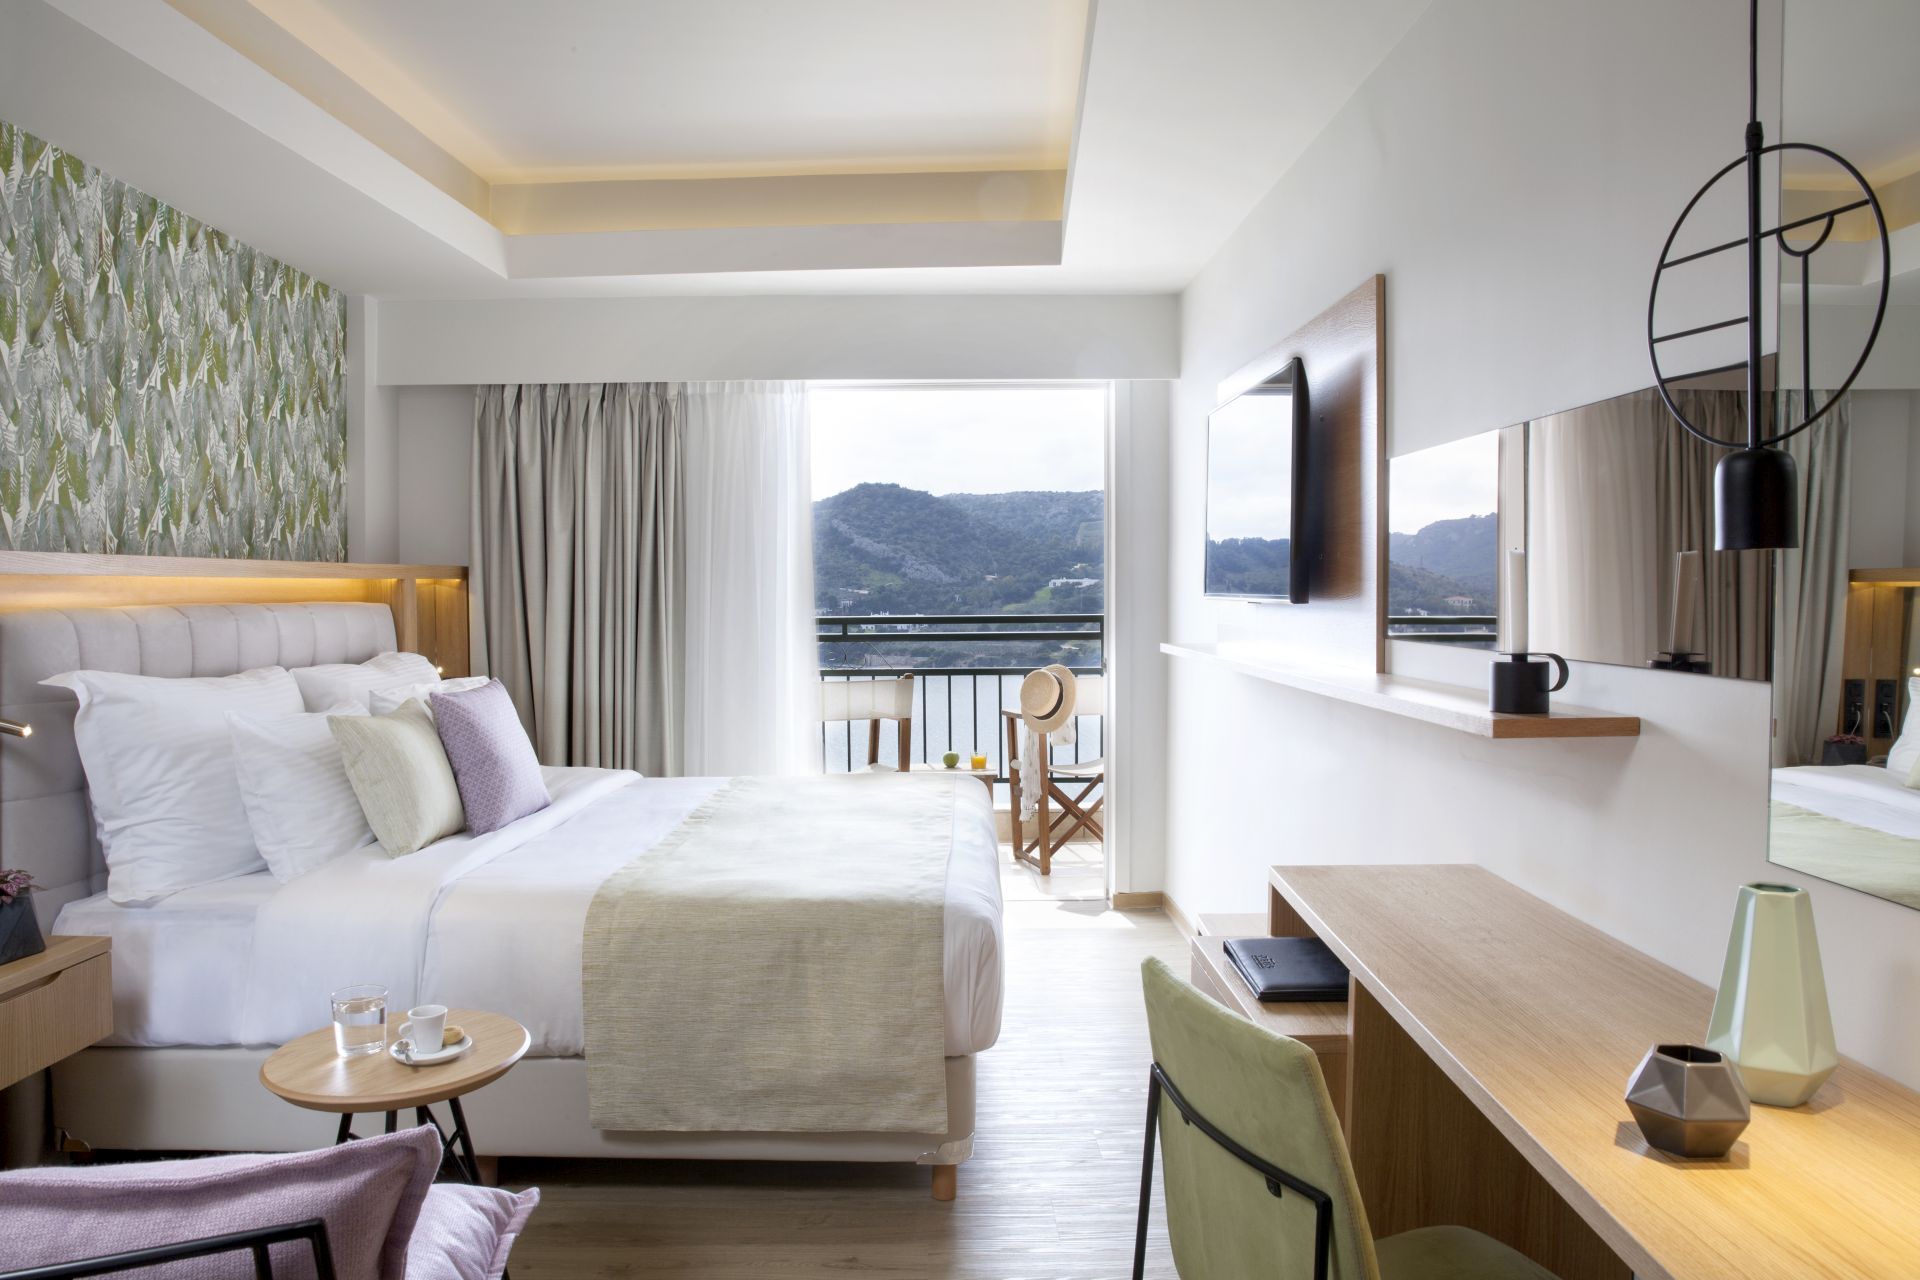 Dolce Attica Riviera deluxe double room, sea view.